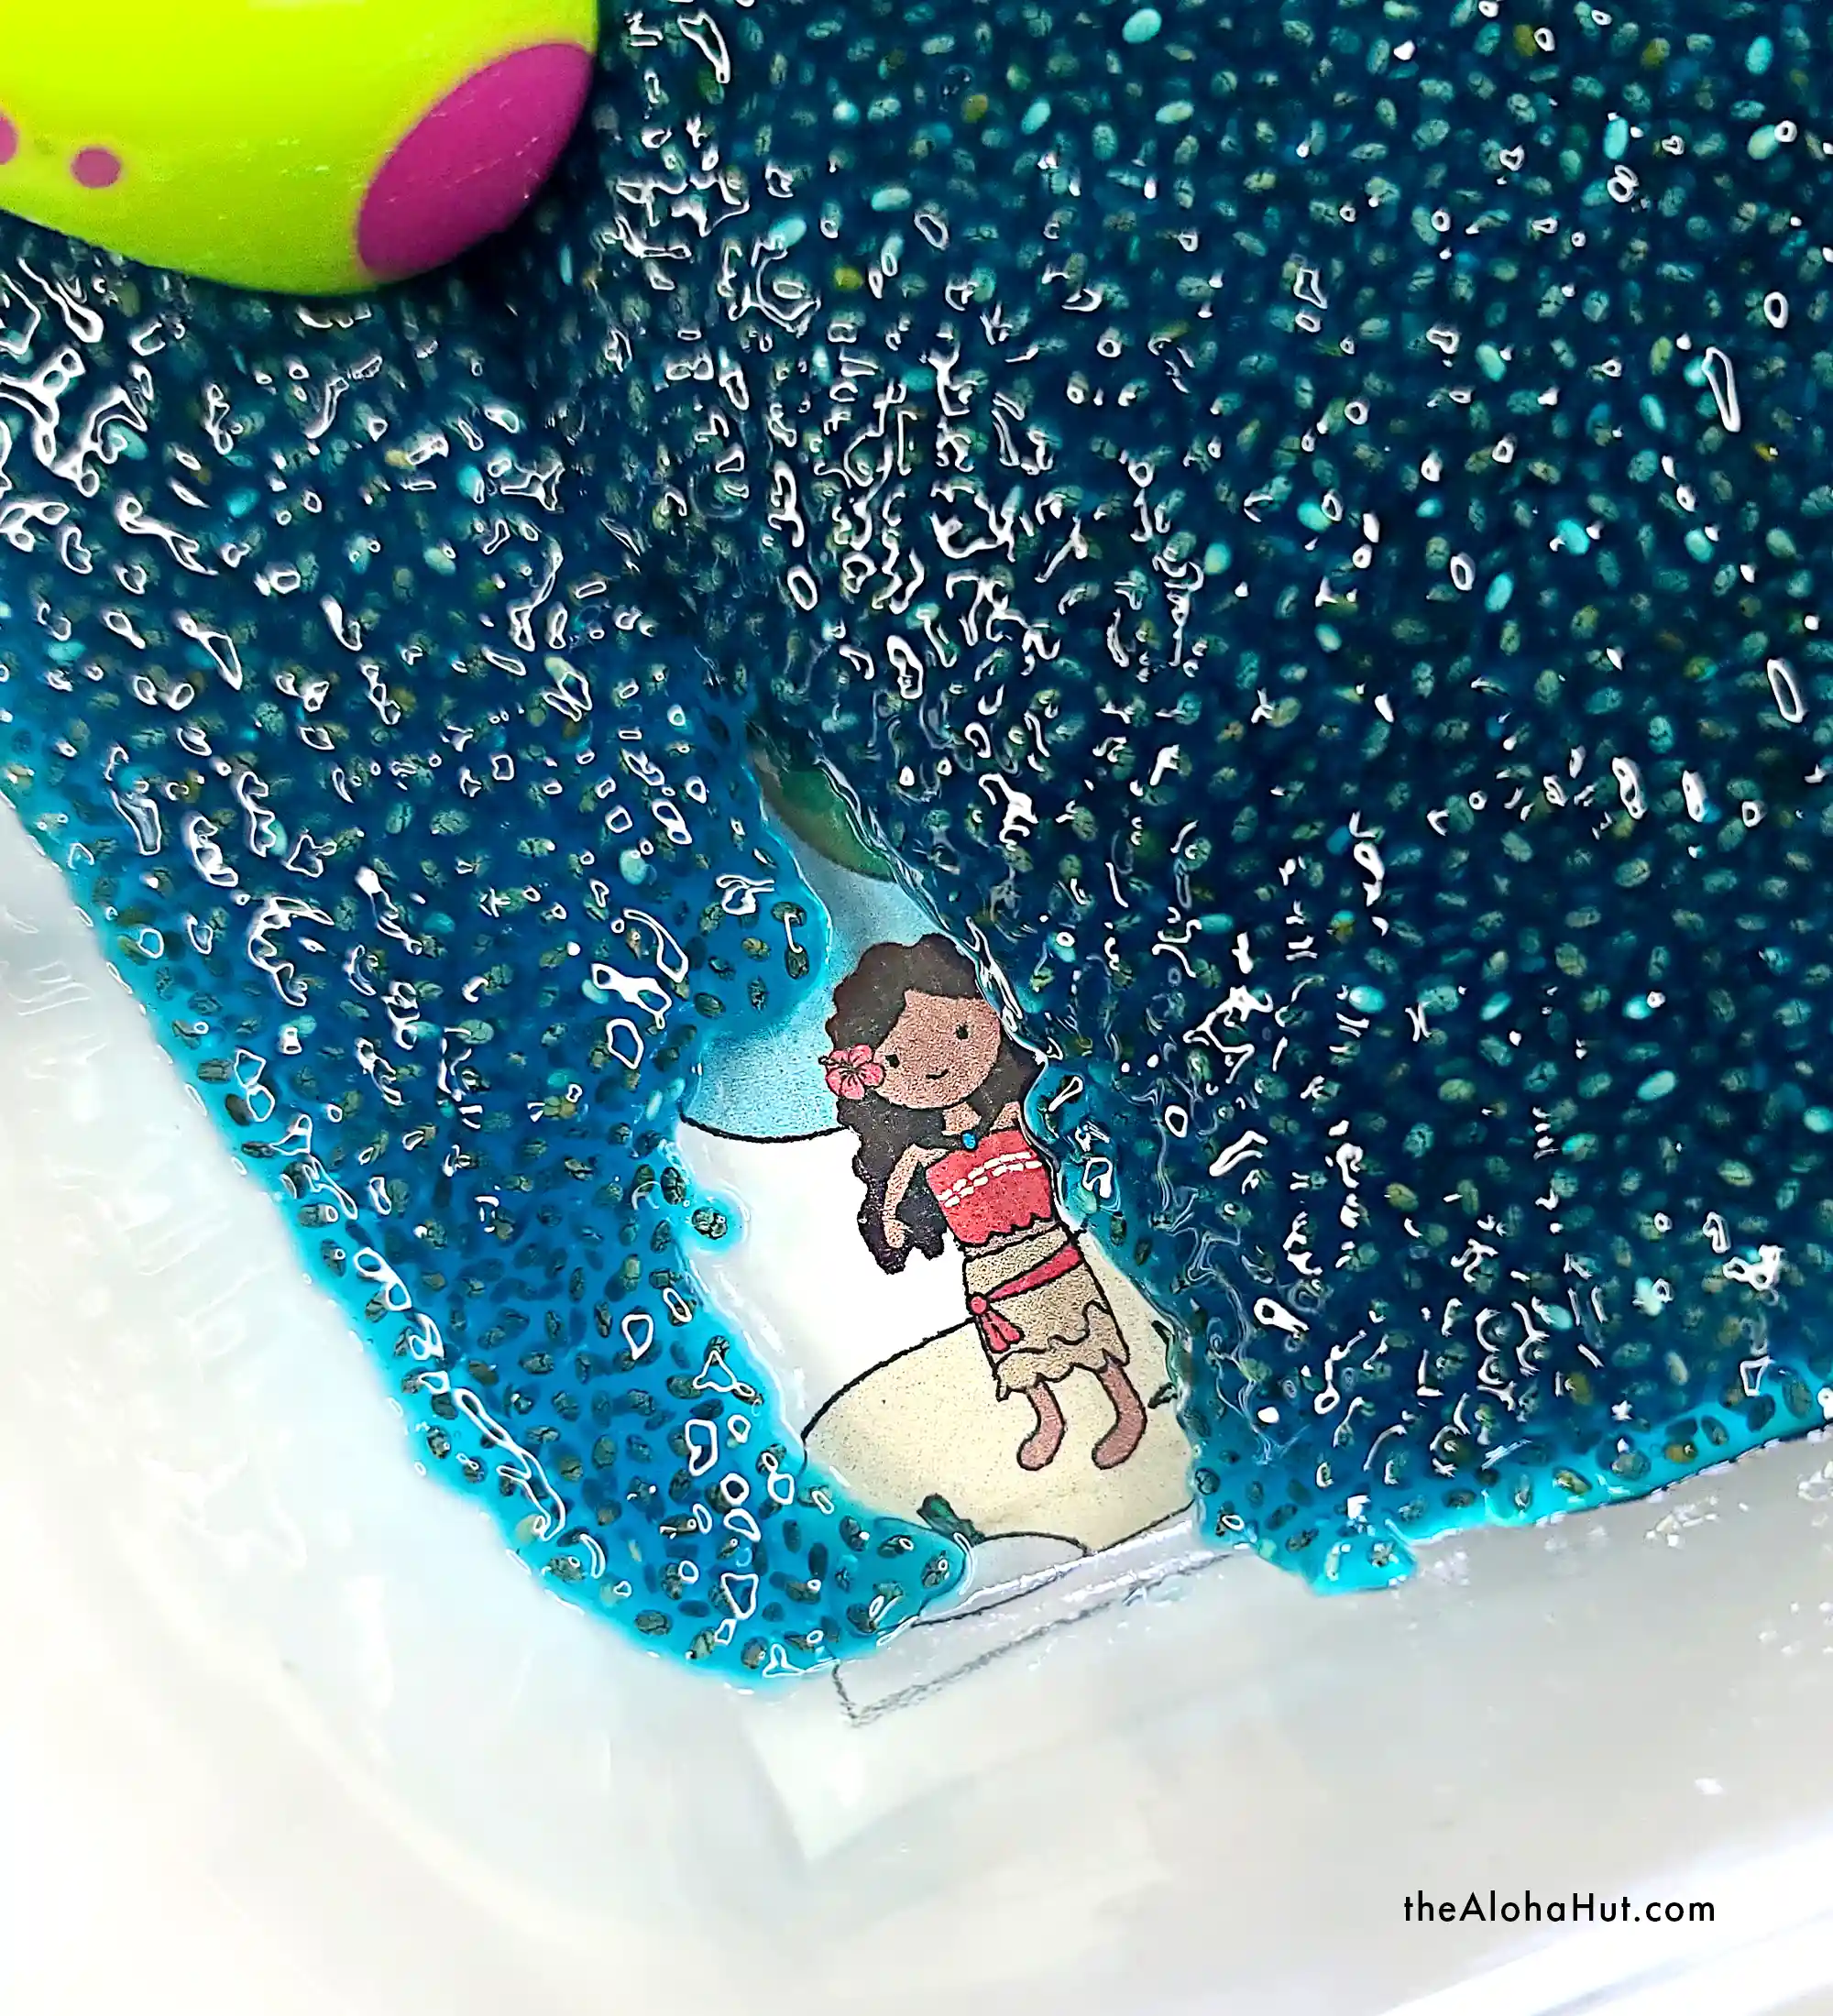 I Spy a Princess - Toddler Sensory Activity - Disney Princess Montessori - How to Make Chia Seed Slime